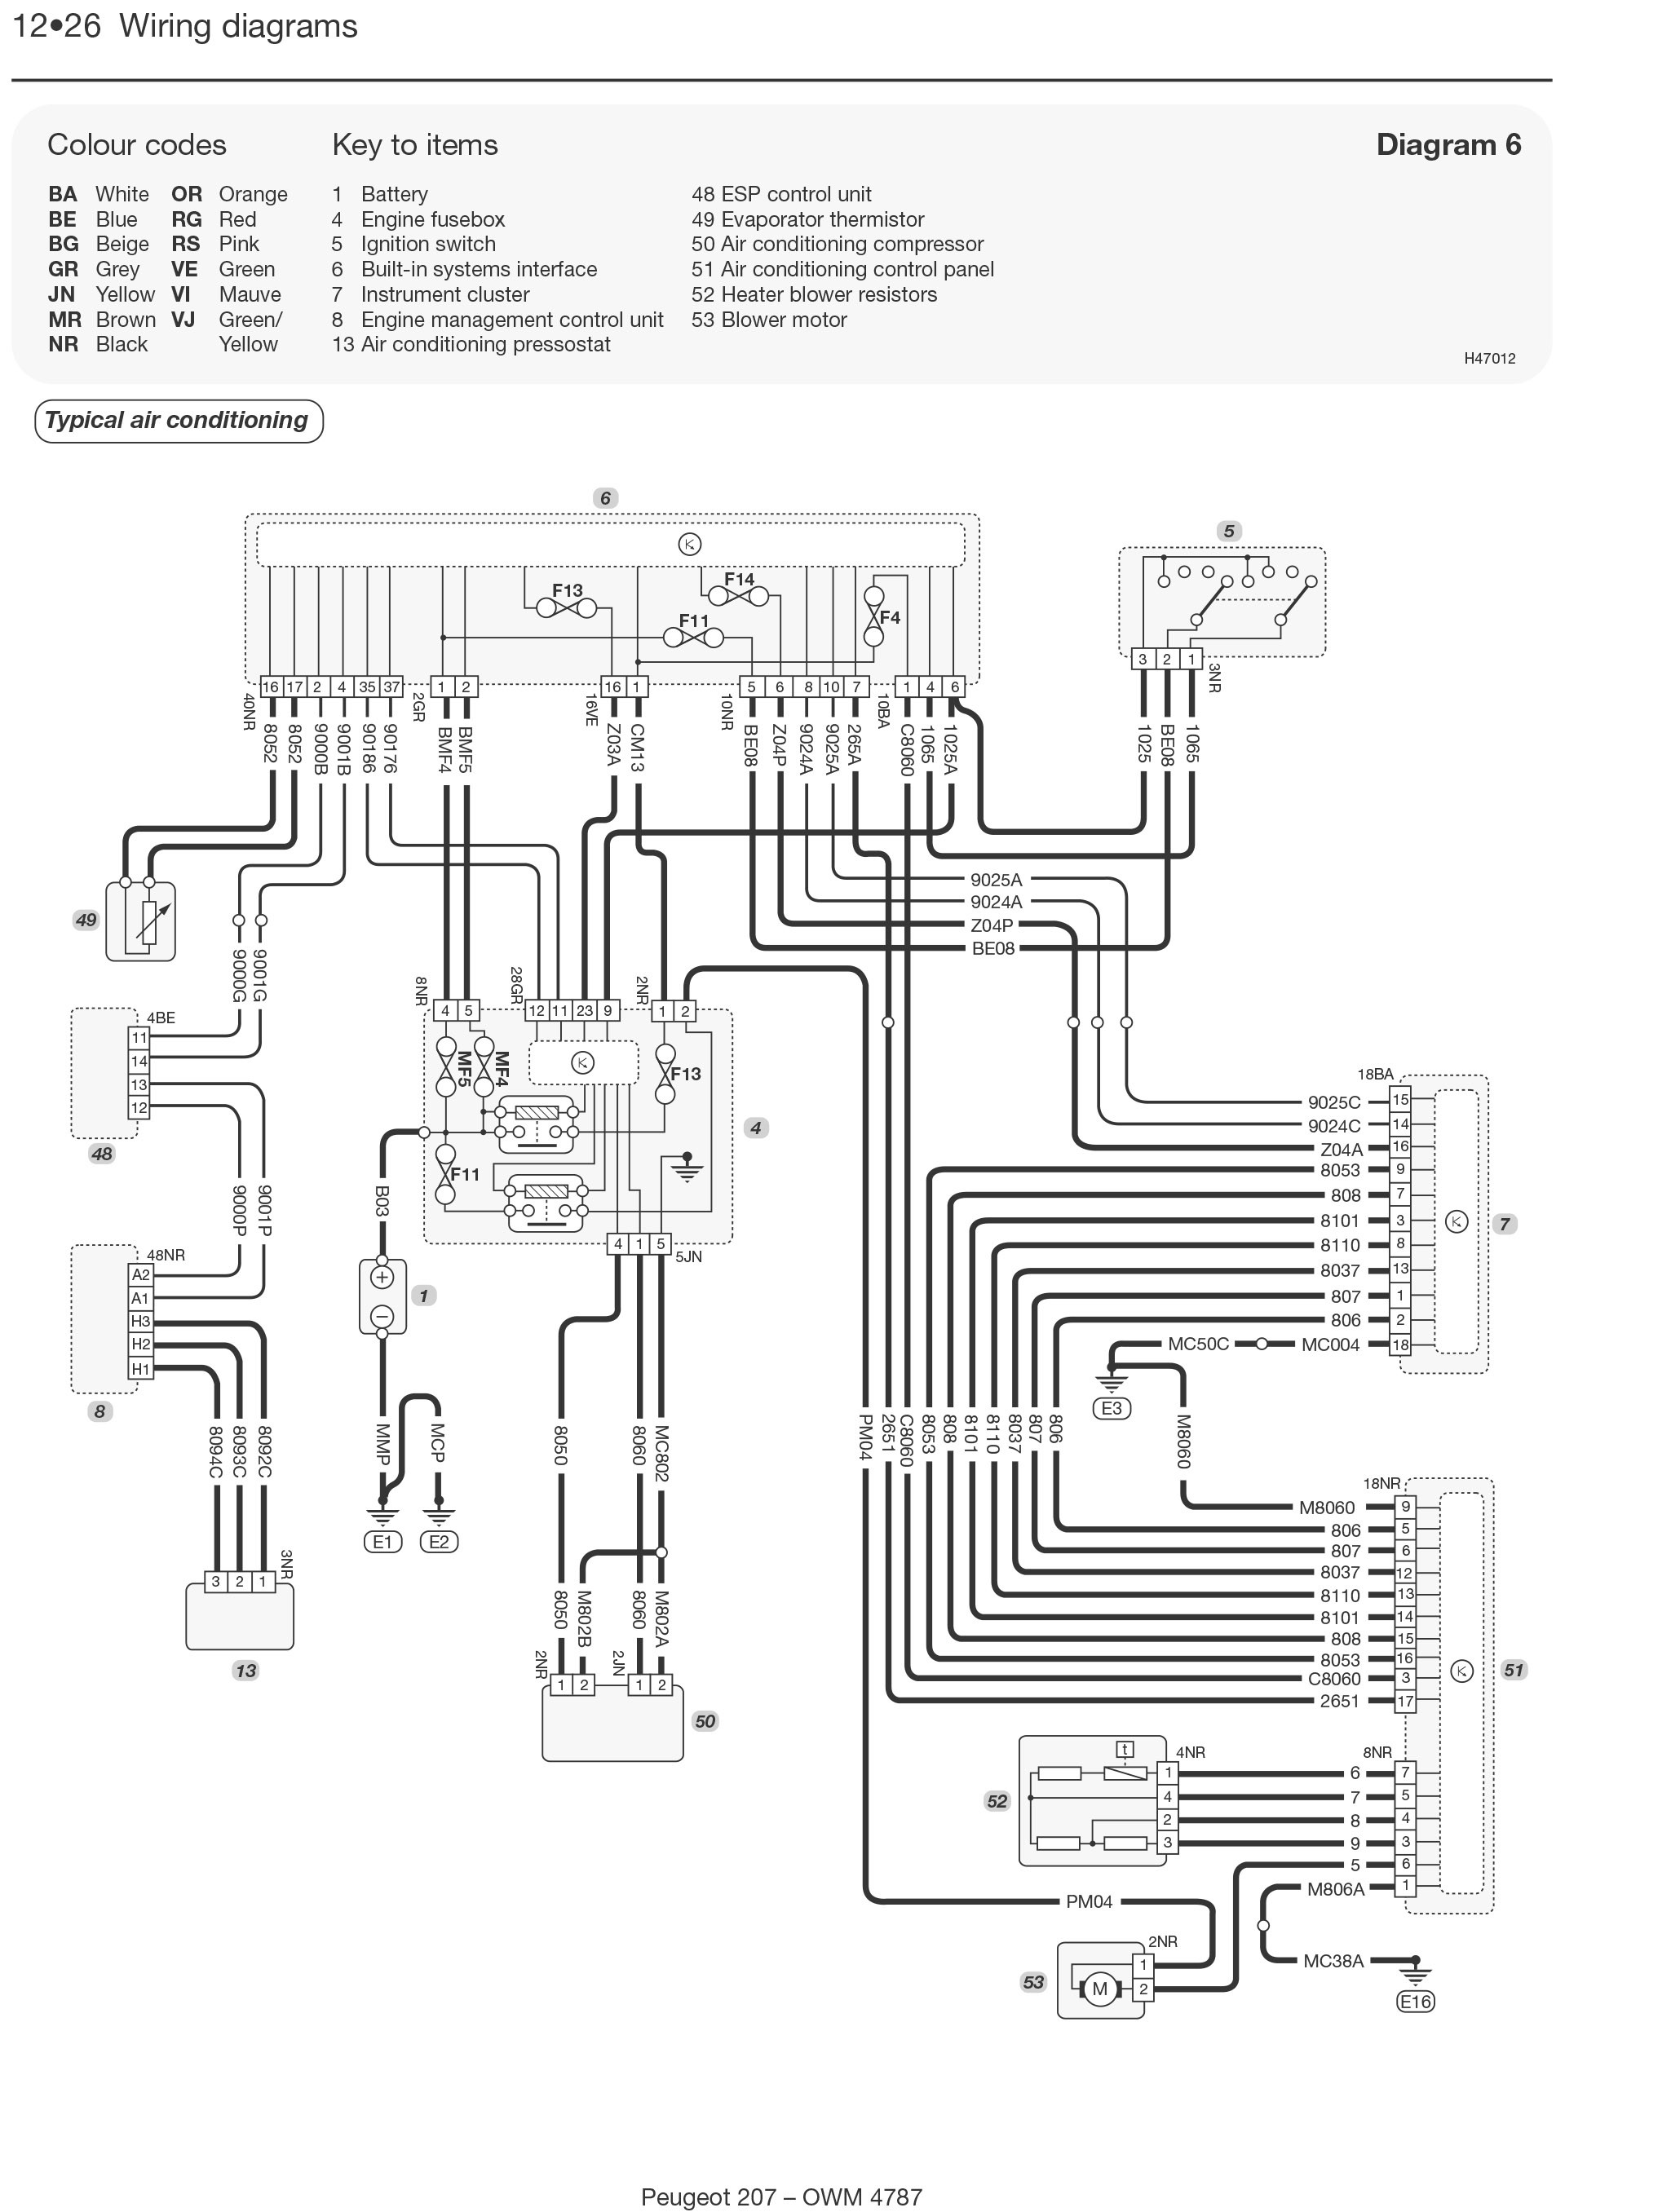 Peugeot 106 Engine Diagram Fuse Box Diagram Peugeot 106 Automotive Wiring Diagrams Of Peugeot 106 Engine Diagram